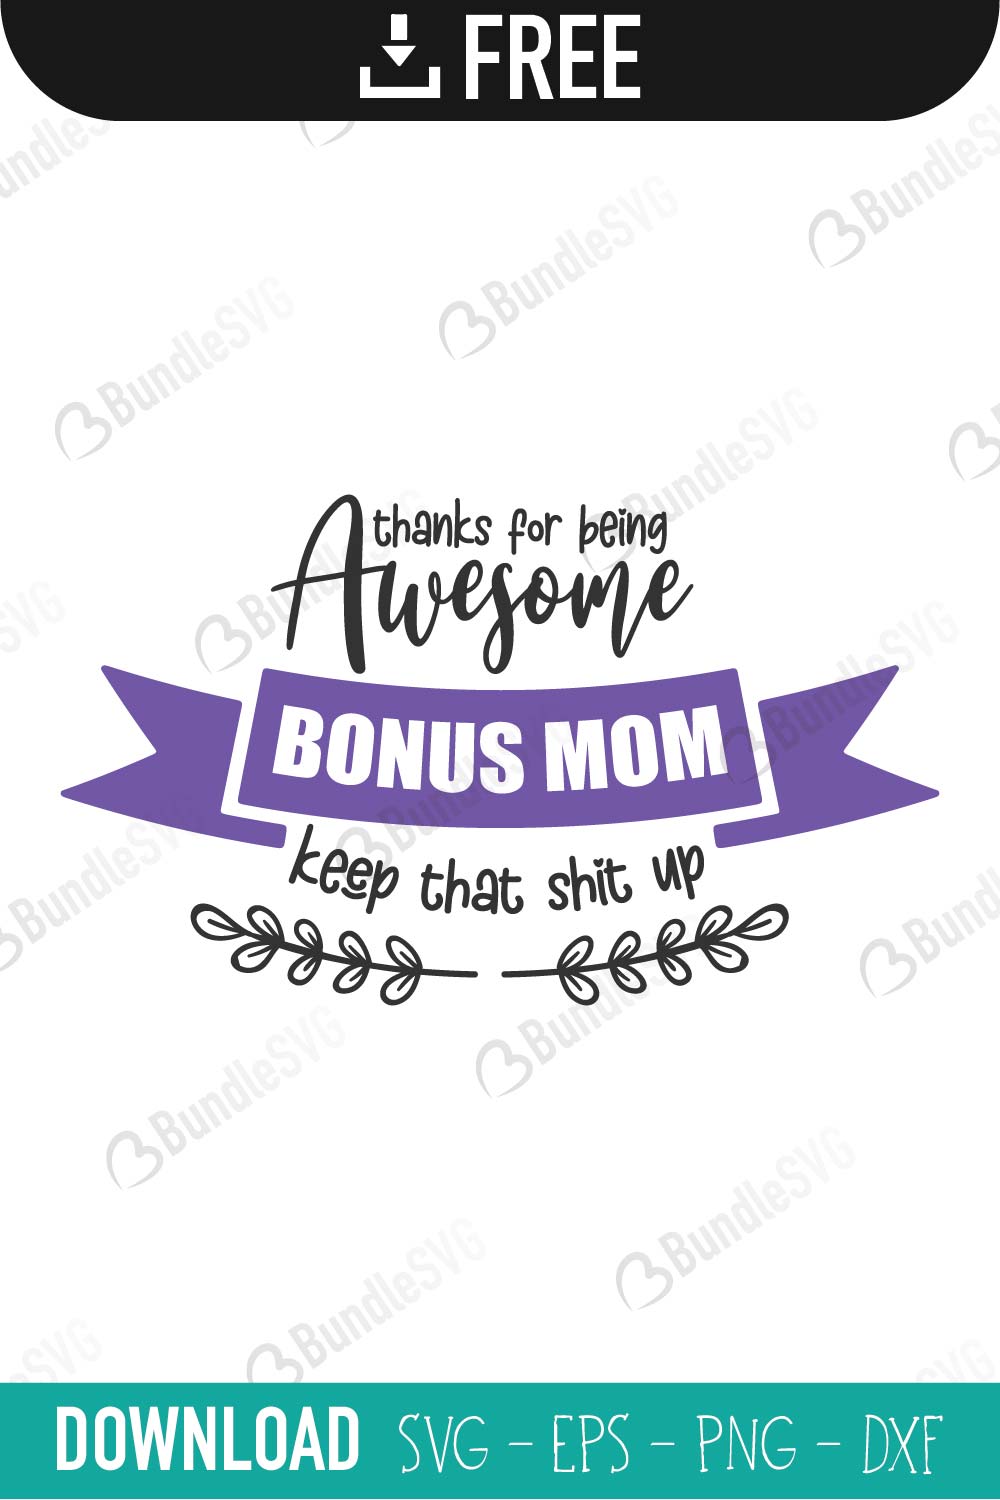 Download Mother Day Gift SVG Cut Files Free Download | BundleSVG.com